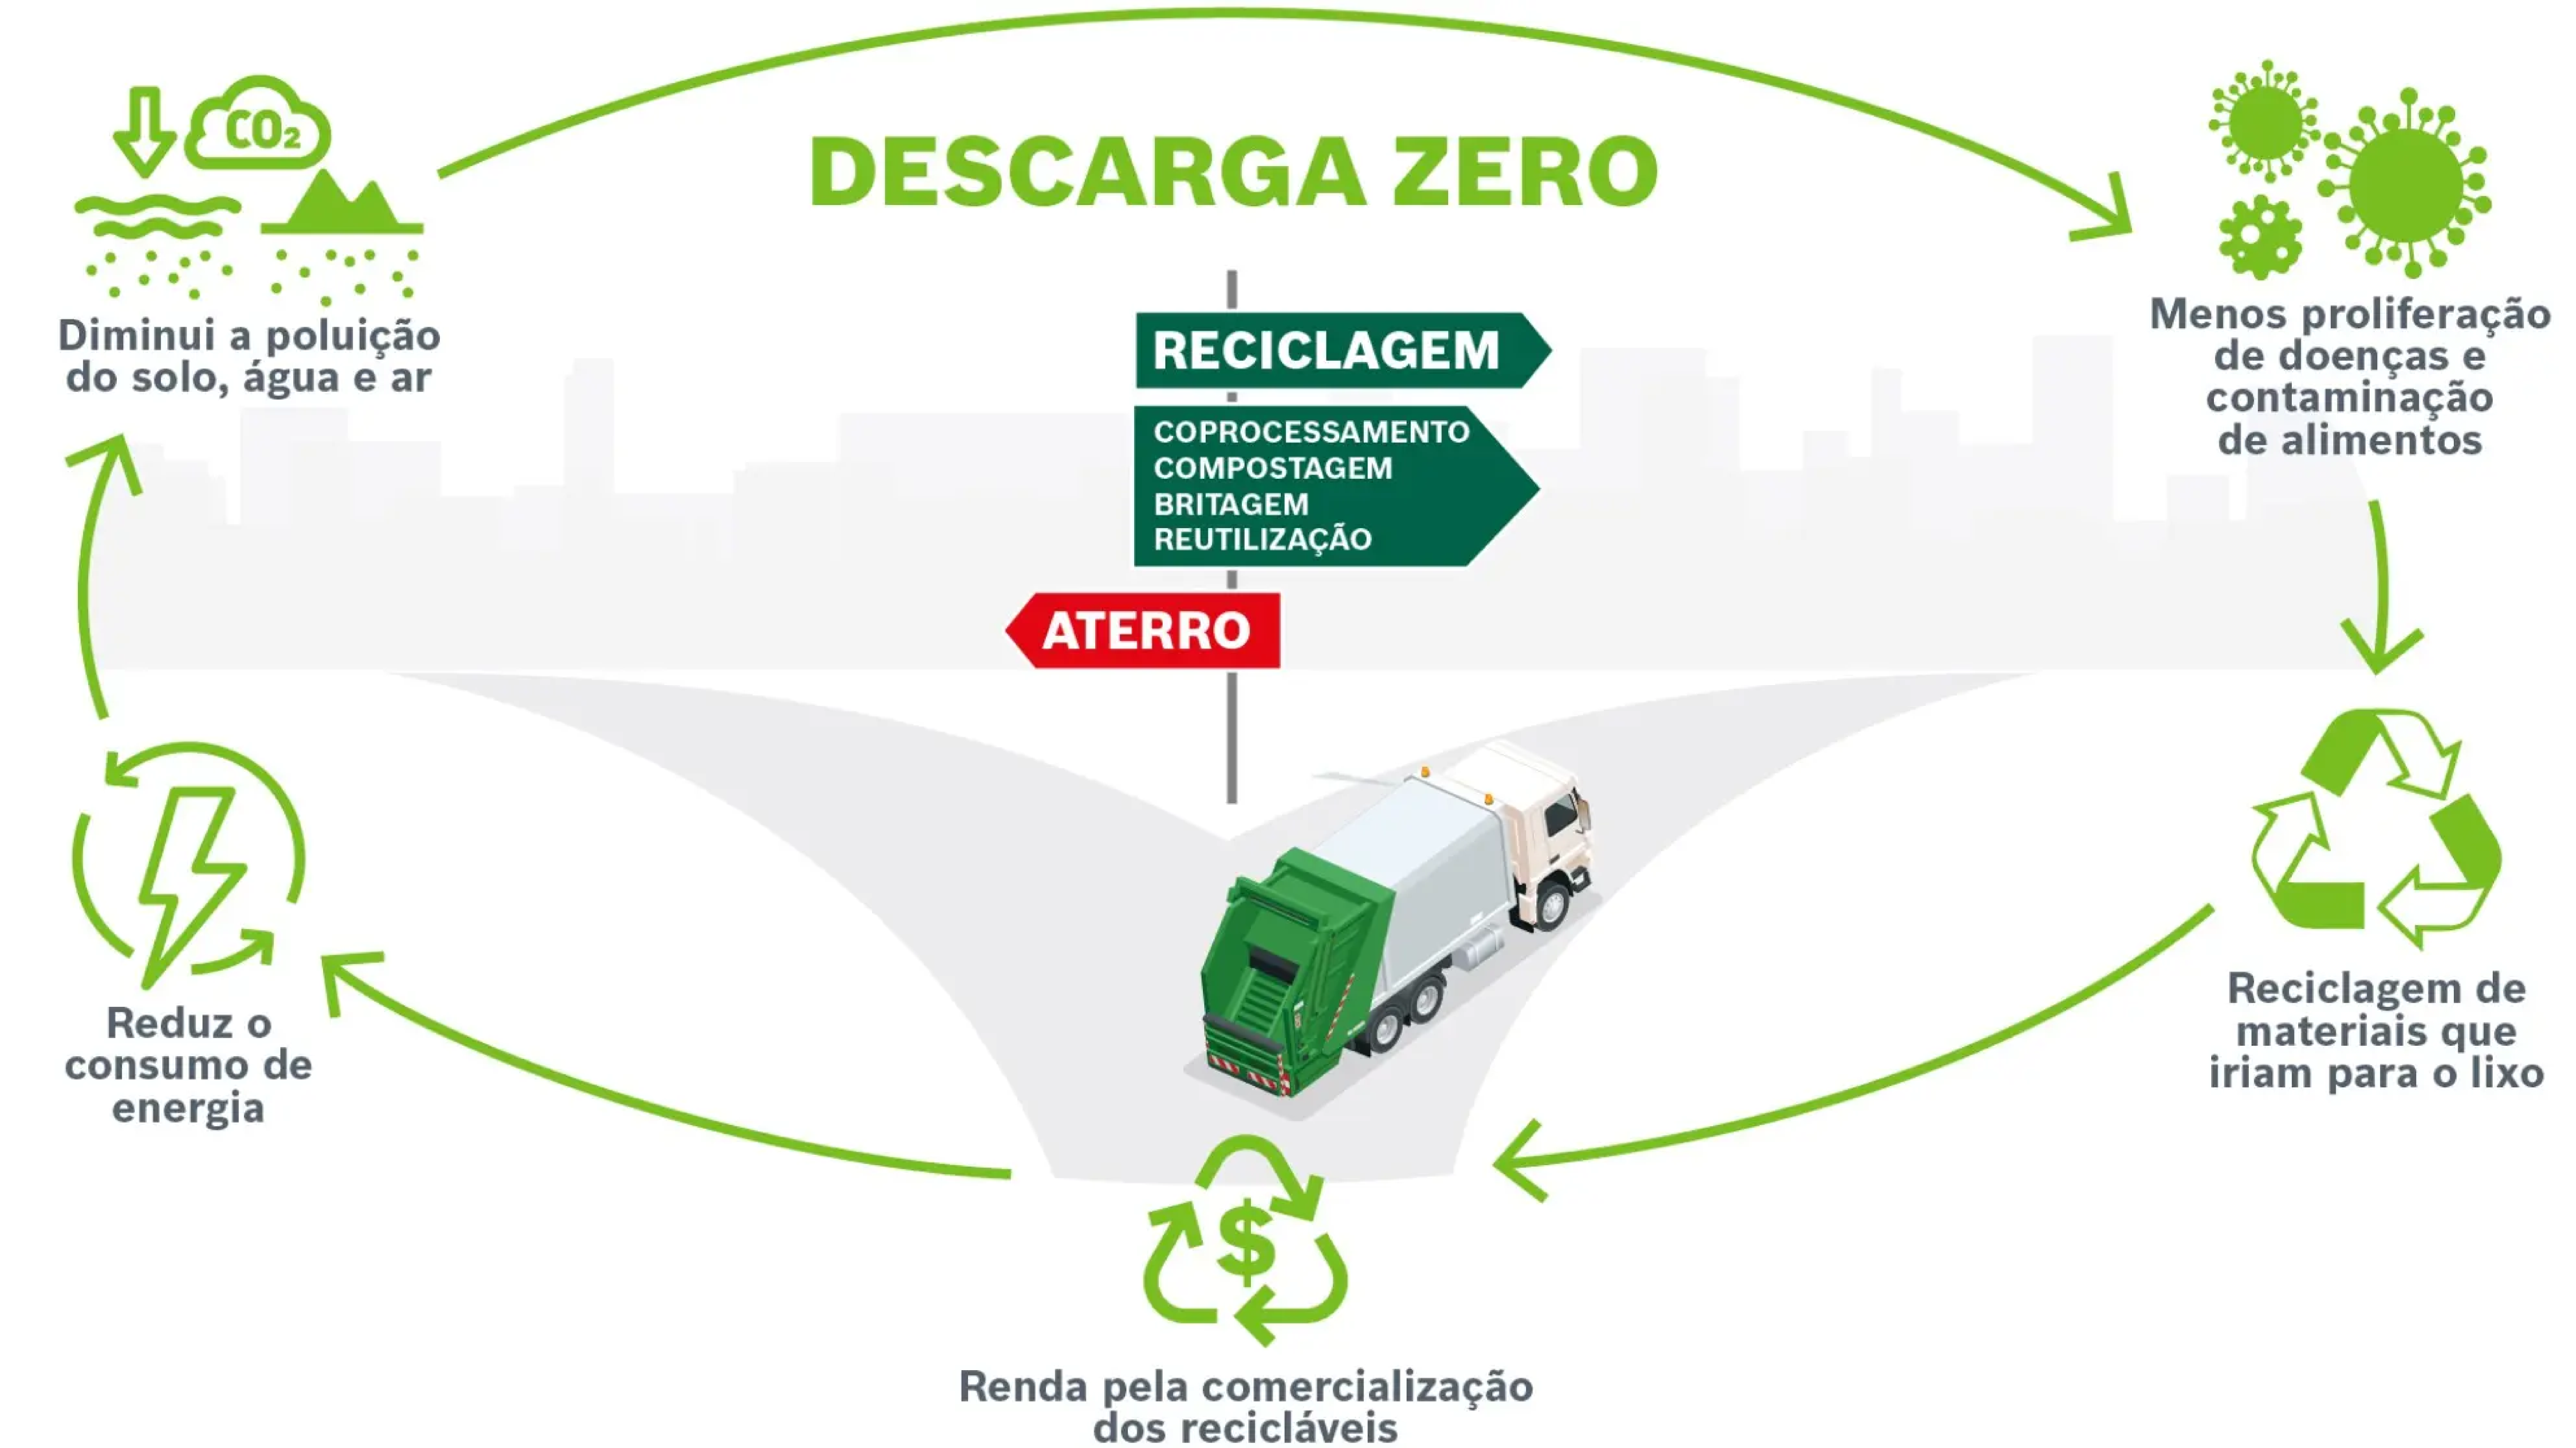 Descarga Zero: a partir deste ano, 100% das unidades fabris da Bosch no Brasil deixam de enviar resíduos para aterros sanitários